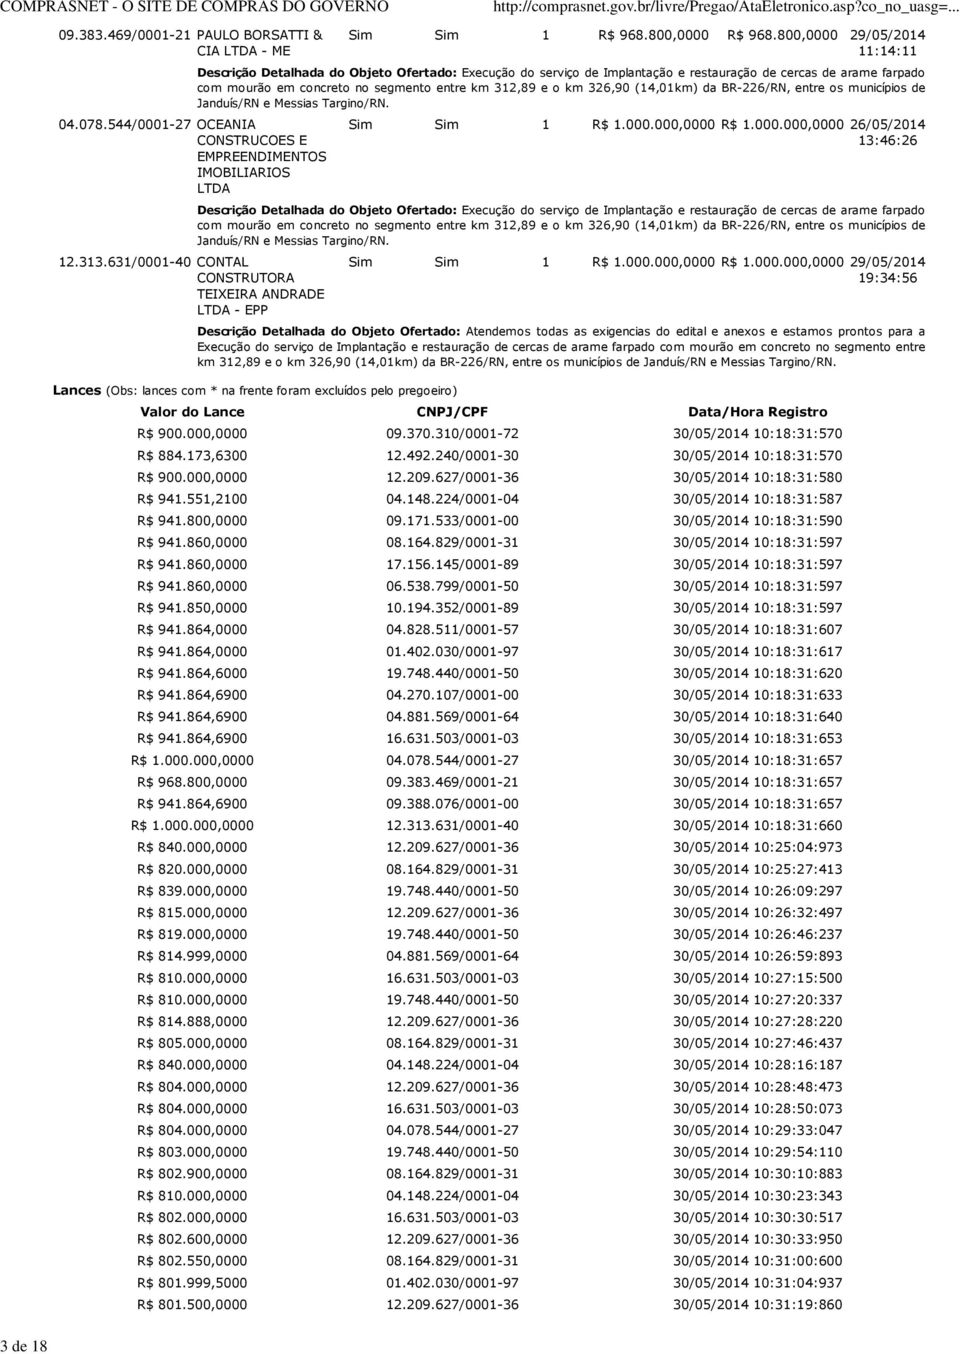 -40 CONTAL CONSTRUTORA TEIXEIRA ANDRADE LTDA - EPP Sim Sim 1 R$ 1.000.